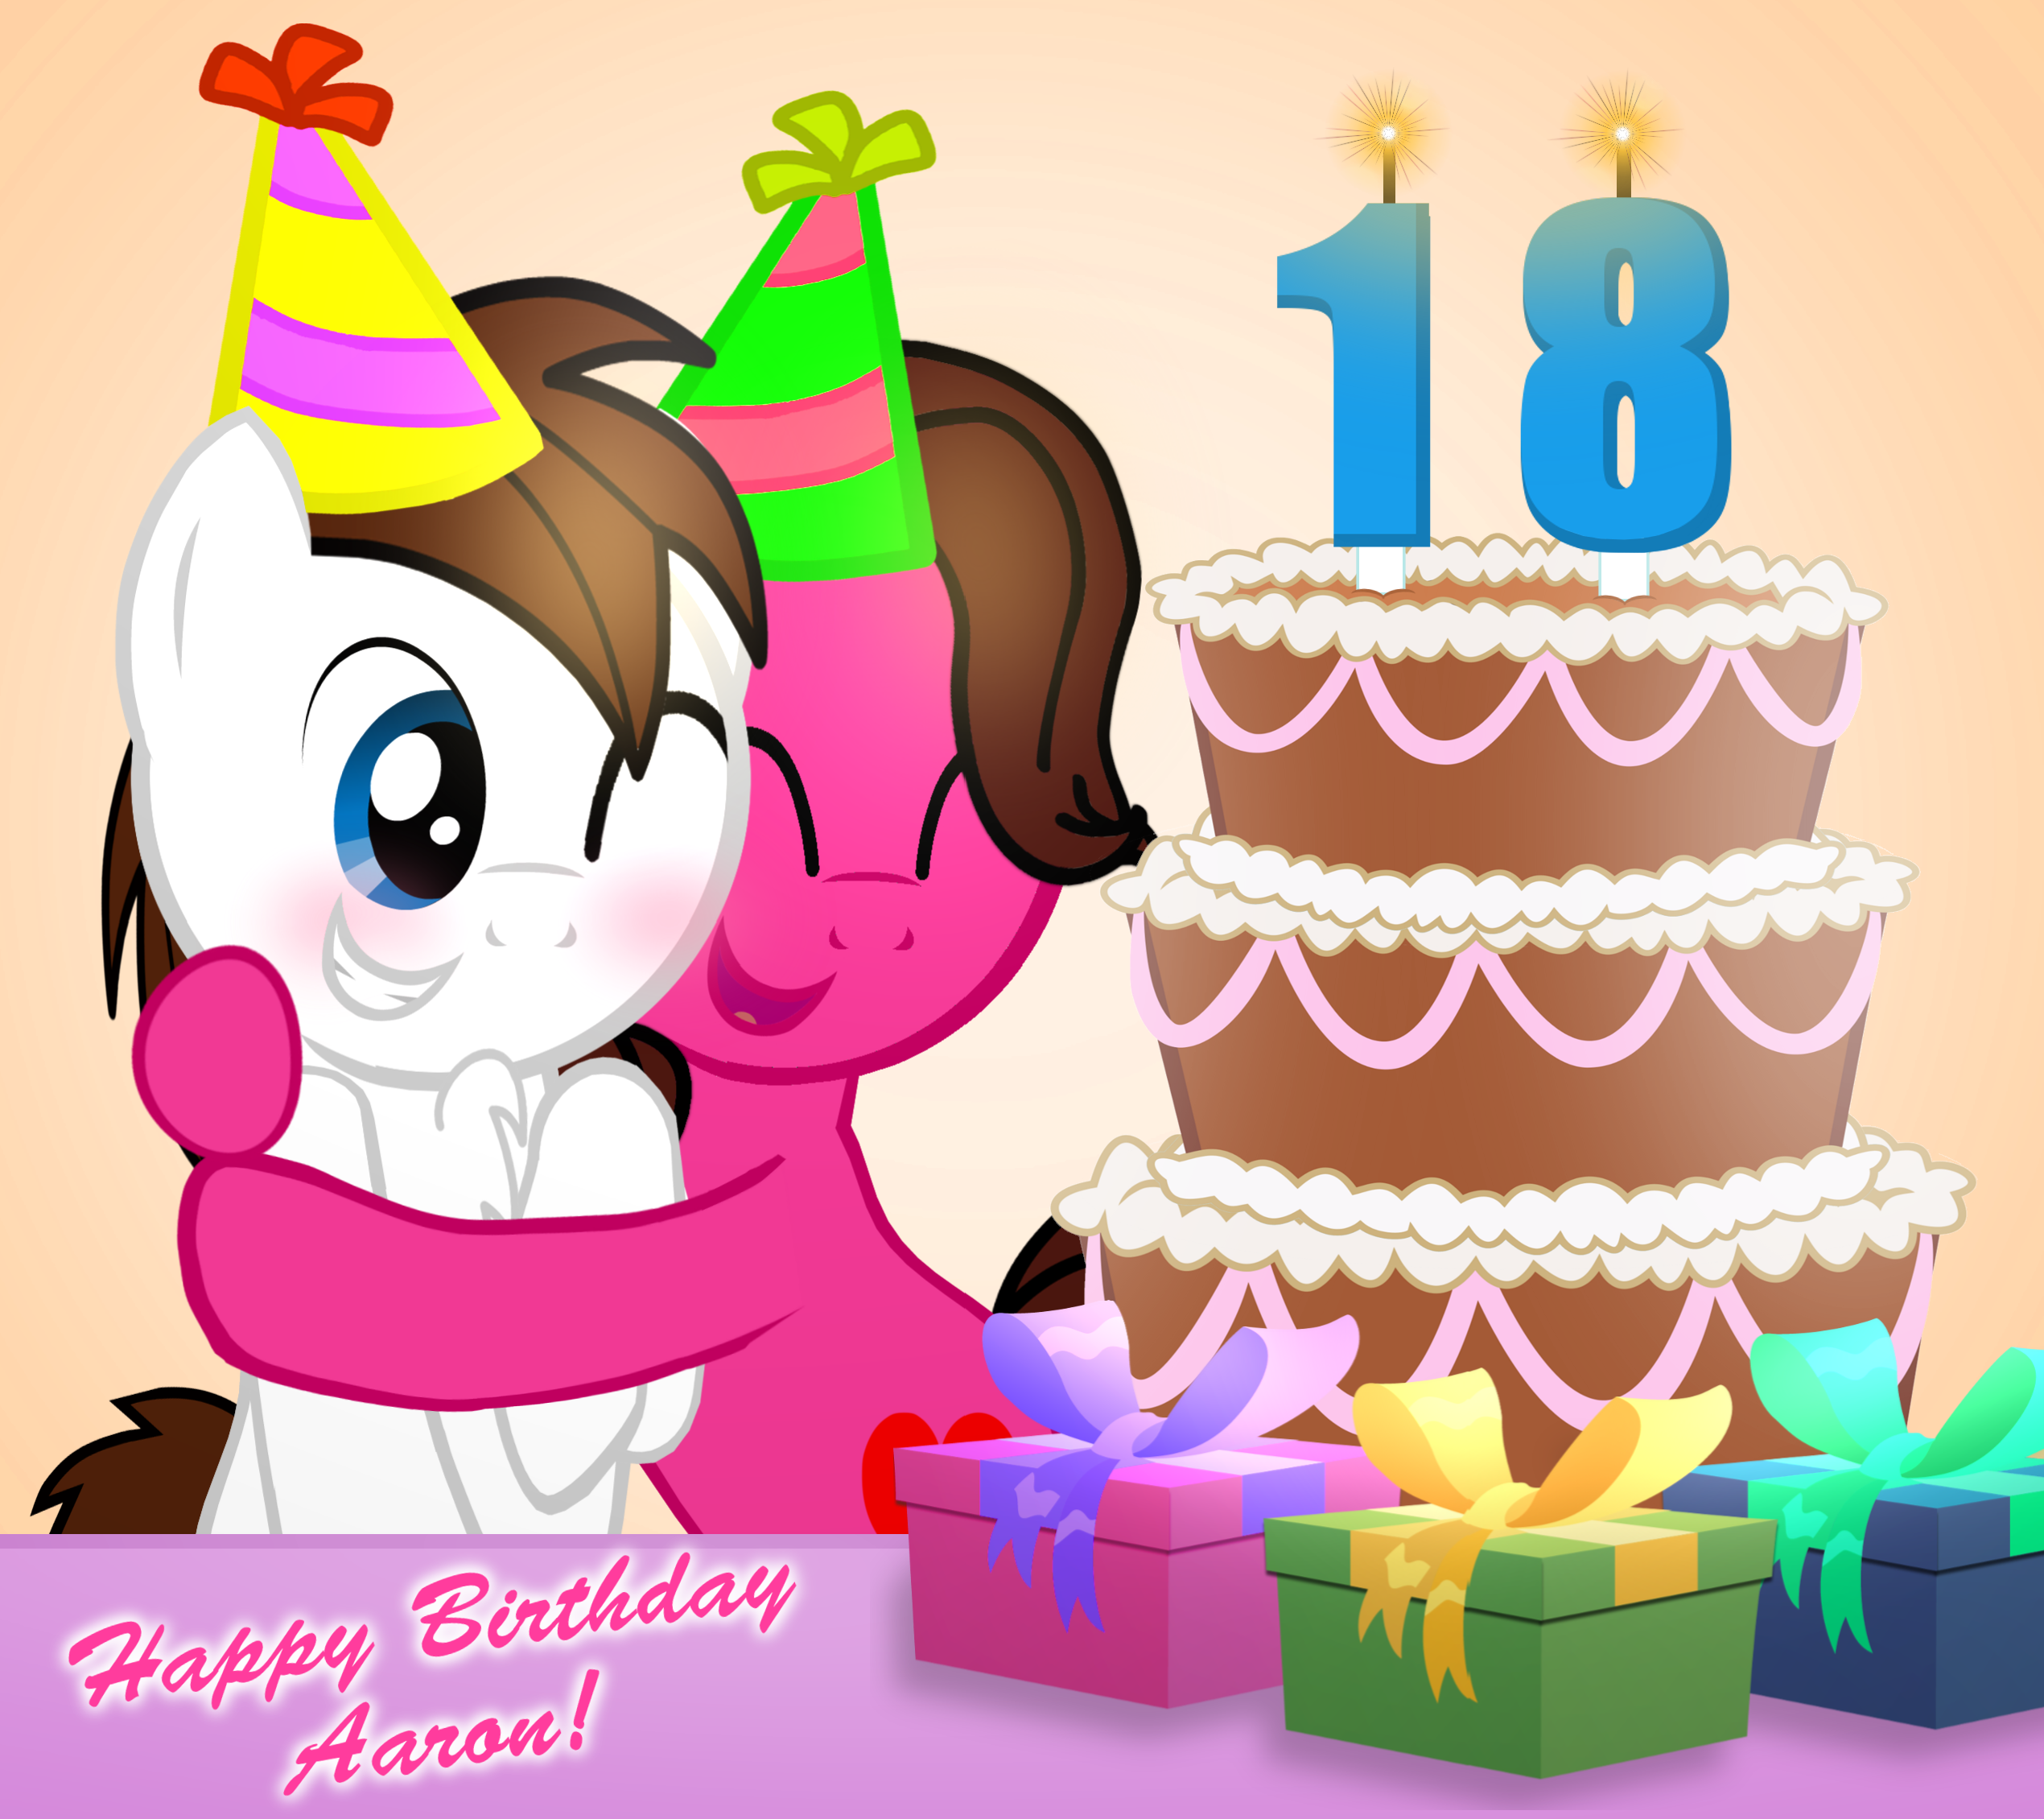 Май литл пони день рождения. С днем рождения пони. Открытка пони с днем рождения. День рождение пони 9 лет. Живая пони на день рождения.